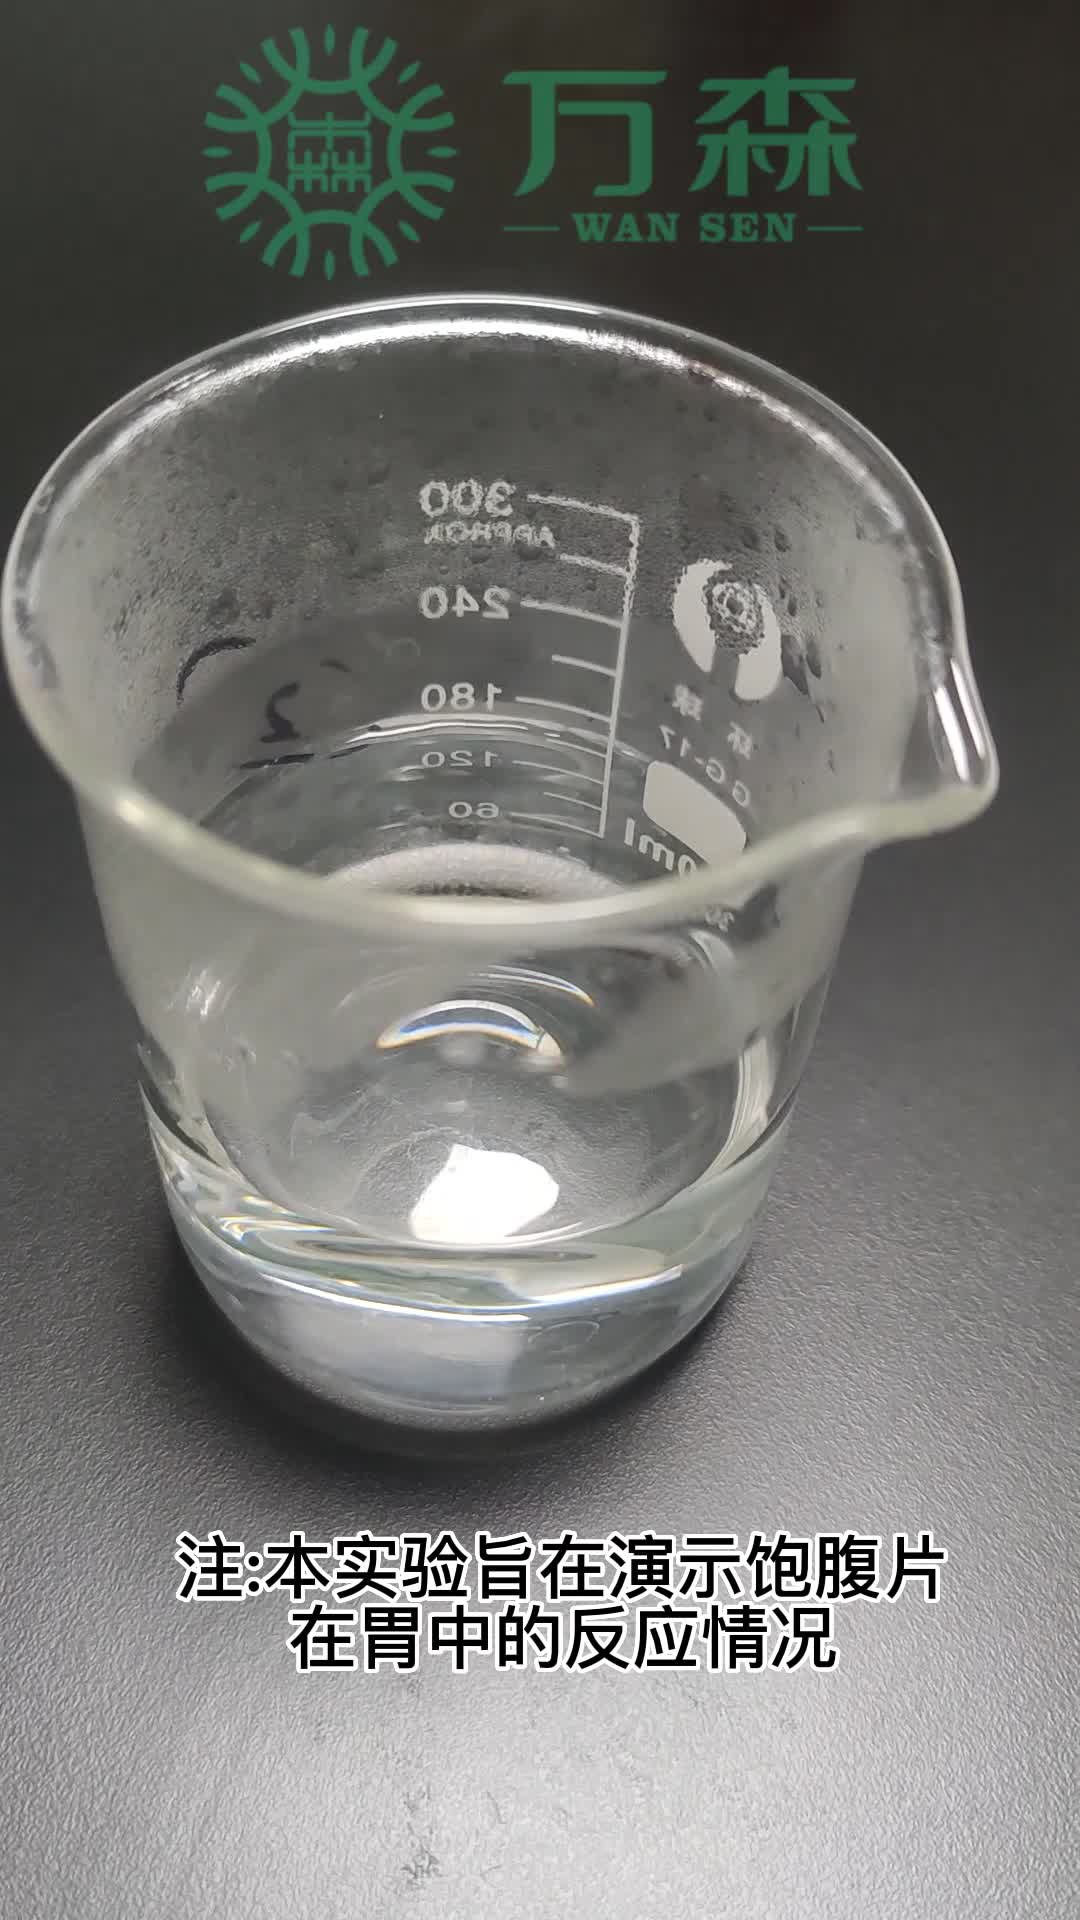 万森健康——水凝胶微粒代餐片演示实验